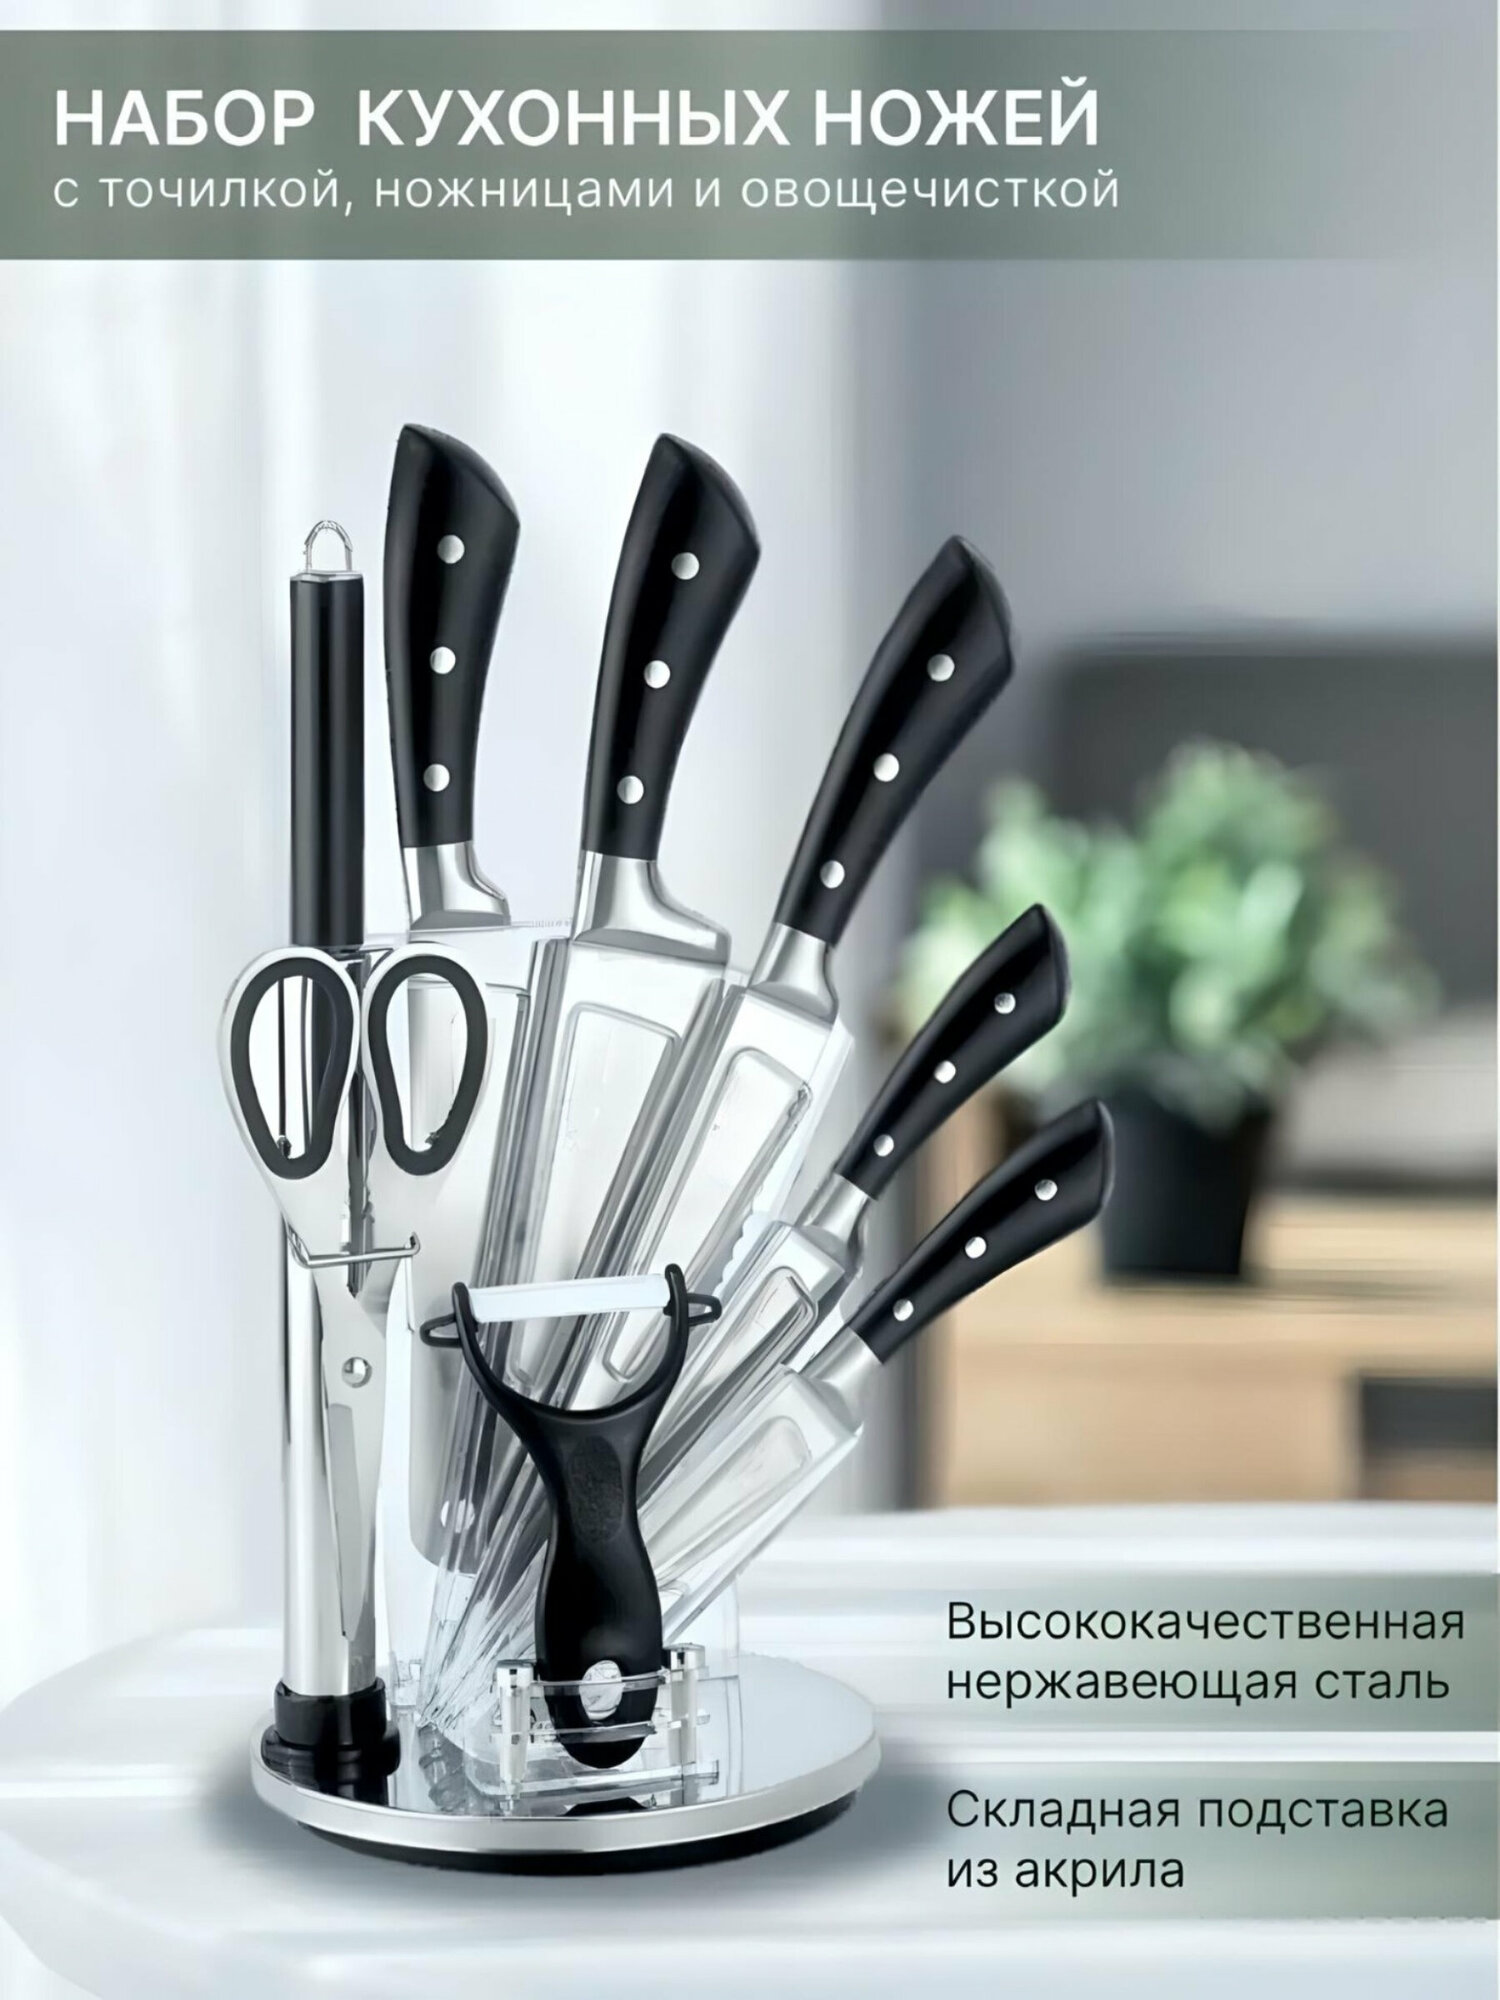 Набор кухонных ножей, кухонные ножи, кухонные ножи для дома, 9 предметов, подставка из акрила, точилка, овощечистка